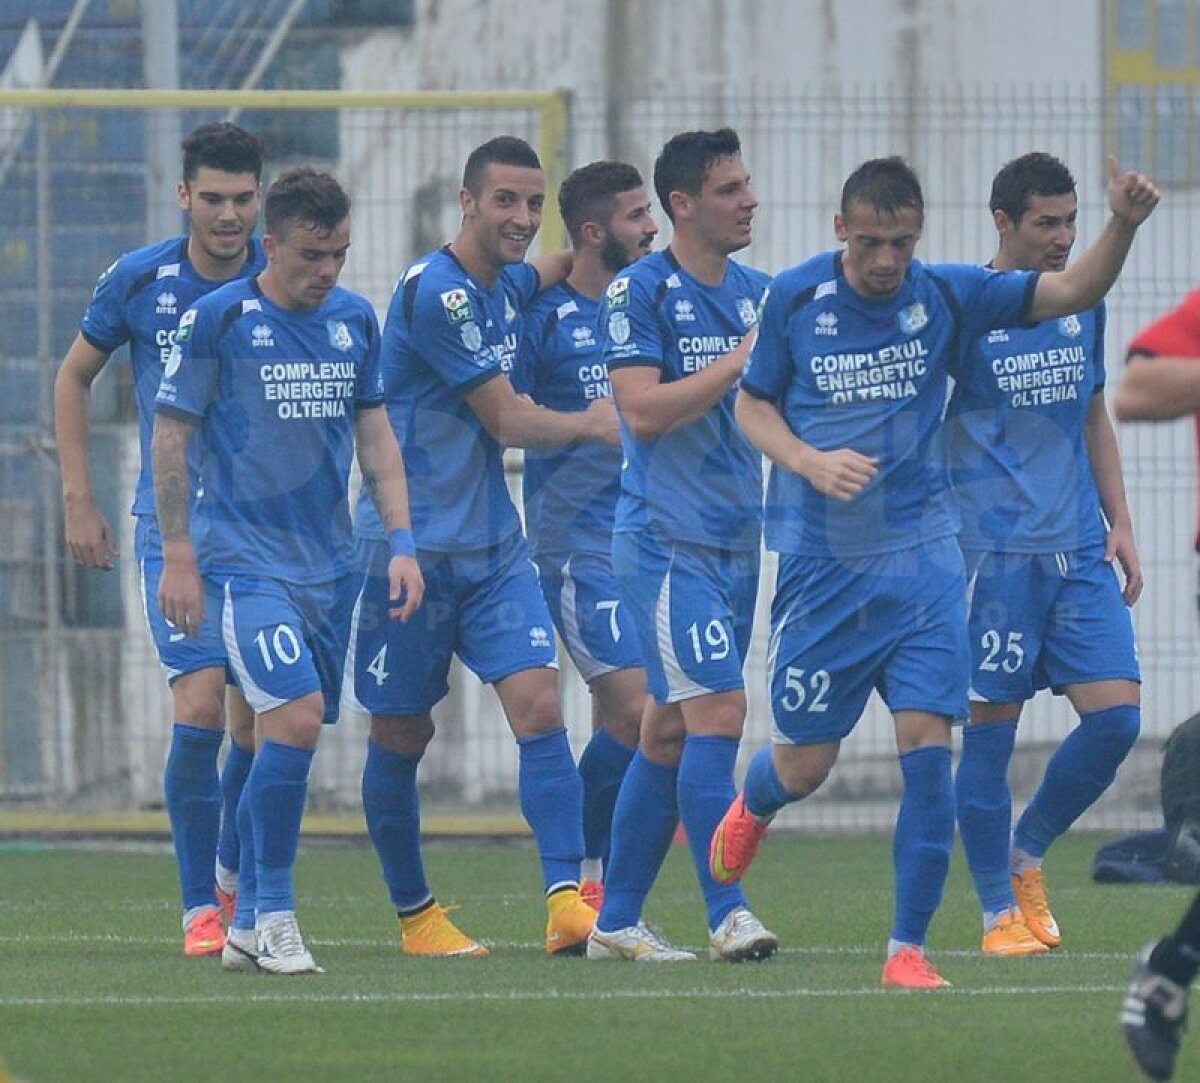 FOTO şi VIDEO » FC Braşov - Pandurii 0-3 » Prima victorie pentru elevii lui Grigoraş după patru meciuri